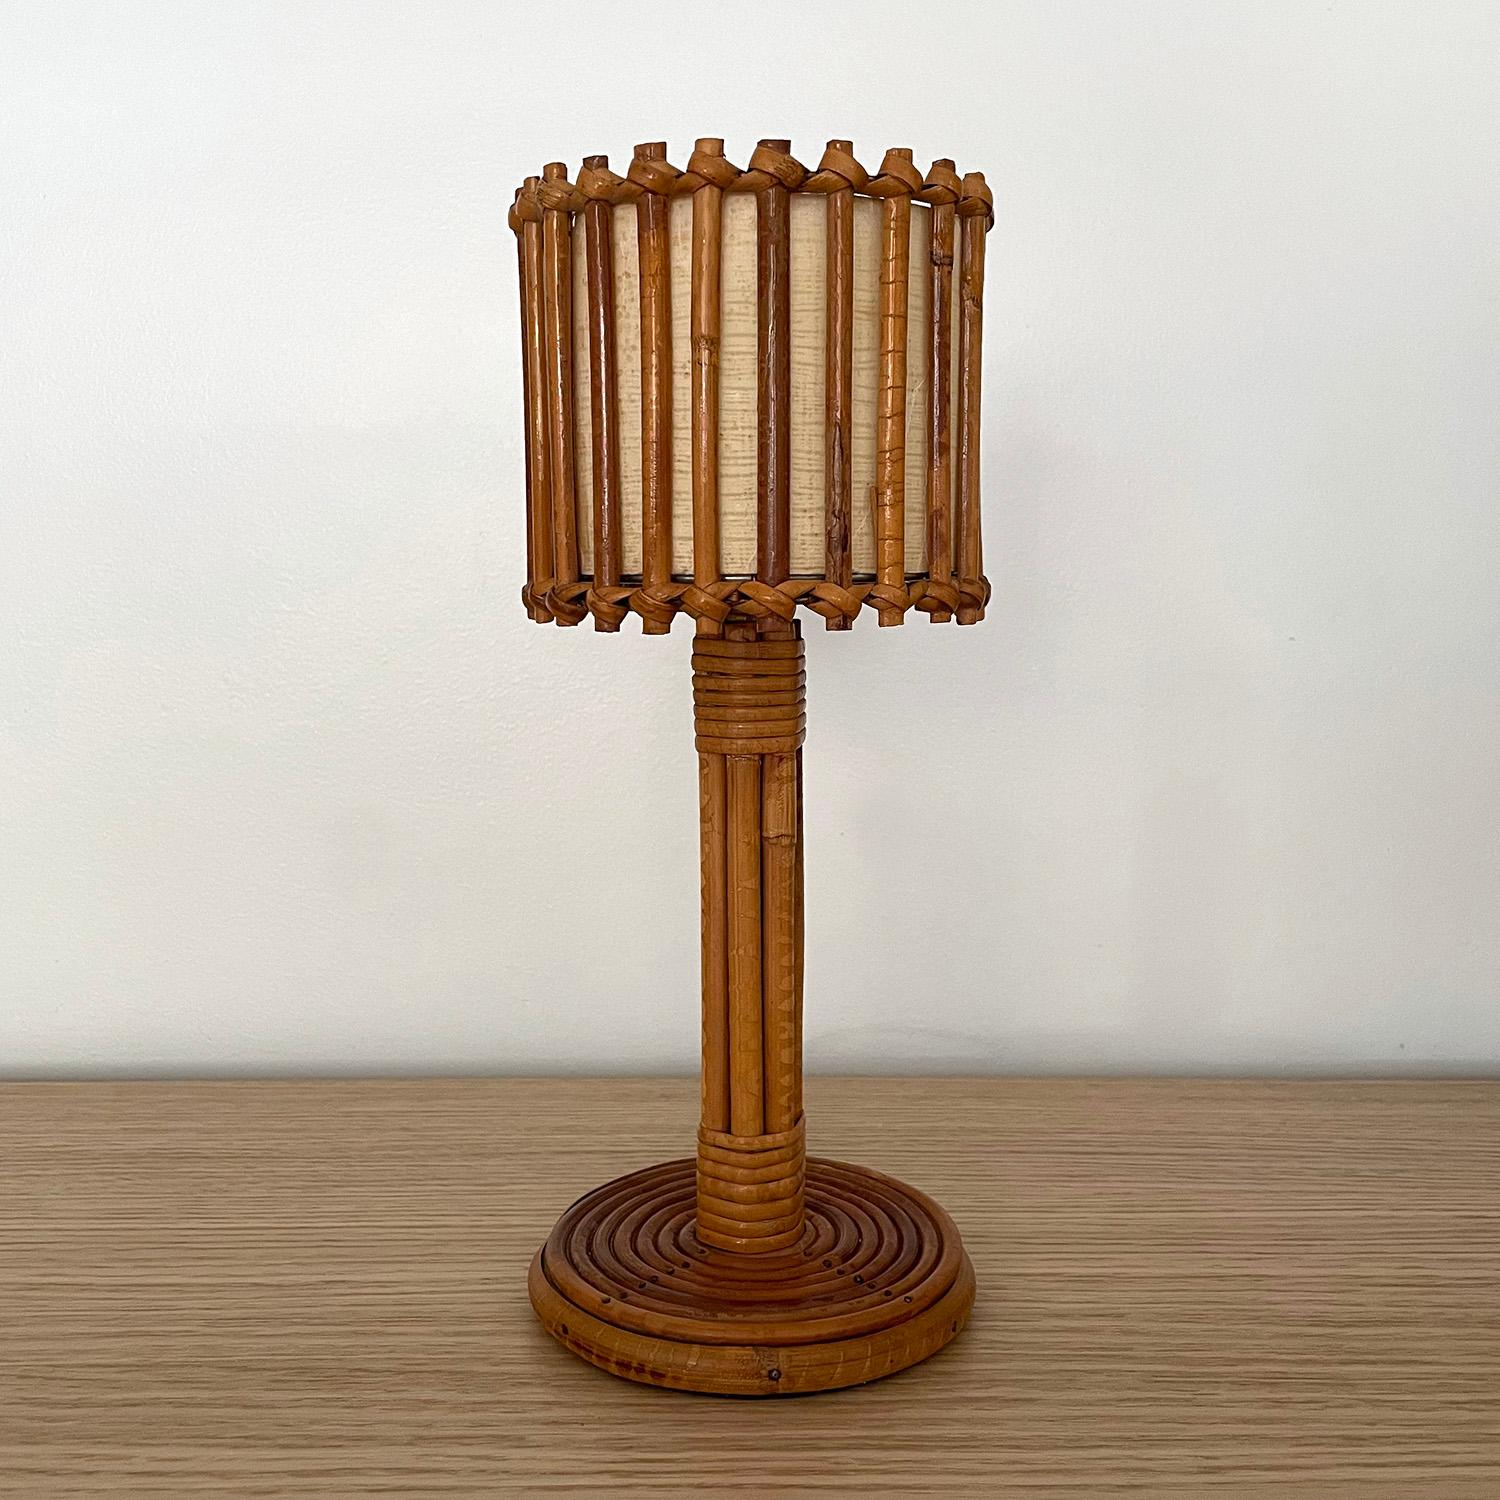 Lampe à poser en rotin Louis Sognot
France, vers les années 1960
Les roseaux de rotin verticaux sont tissés de manière complexe autour de l'abat-jour en forme de tambour.
La doublure intérieure en lin d'origine présente de légères marques de surface